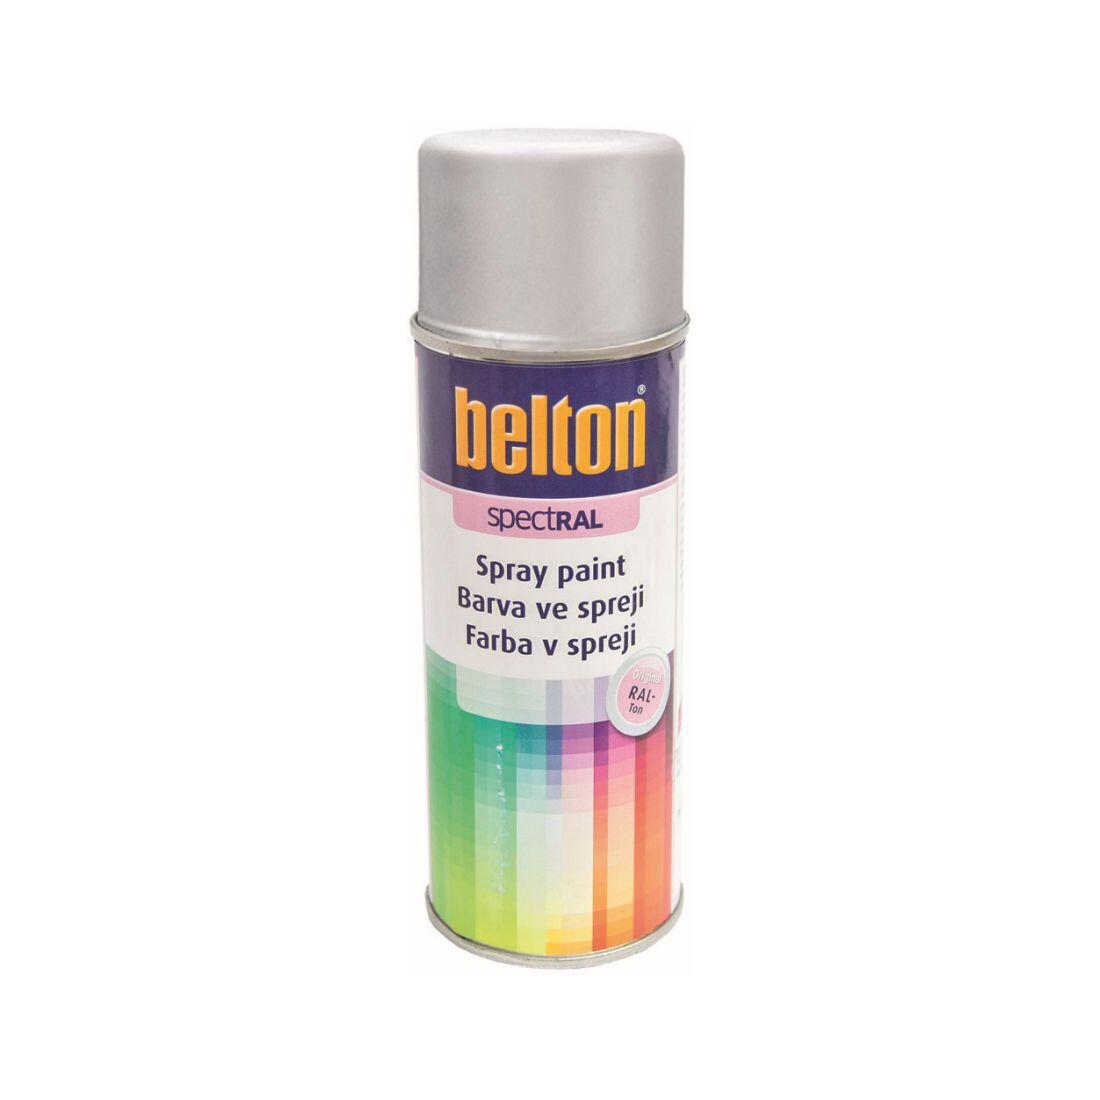 barva ve spreji BELTON RAL 9006, 400ml BÍ Al 0.31 Kg MAXMIX Sklad14 825383 16